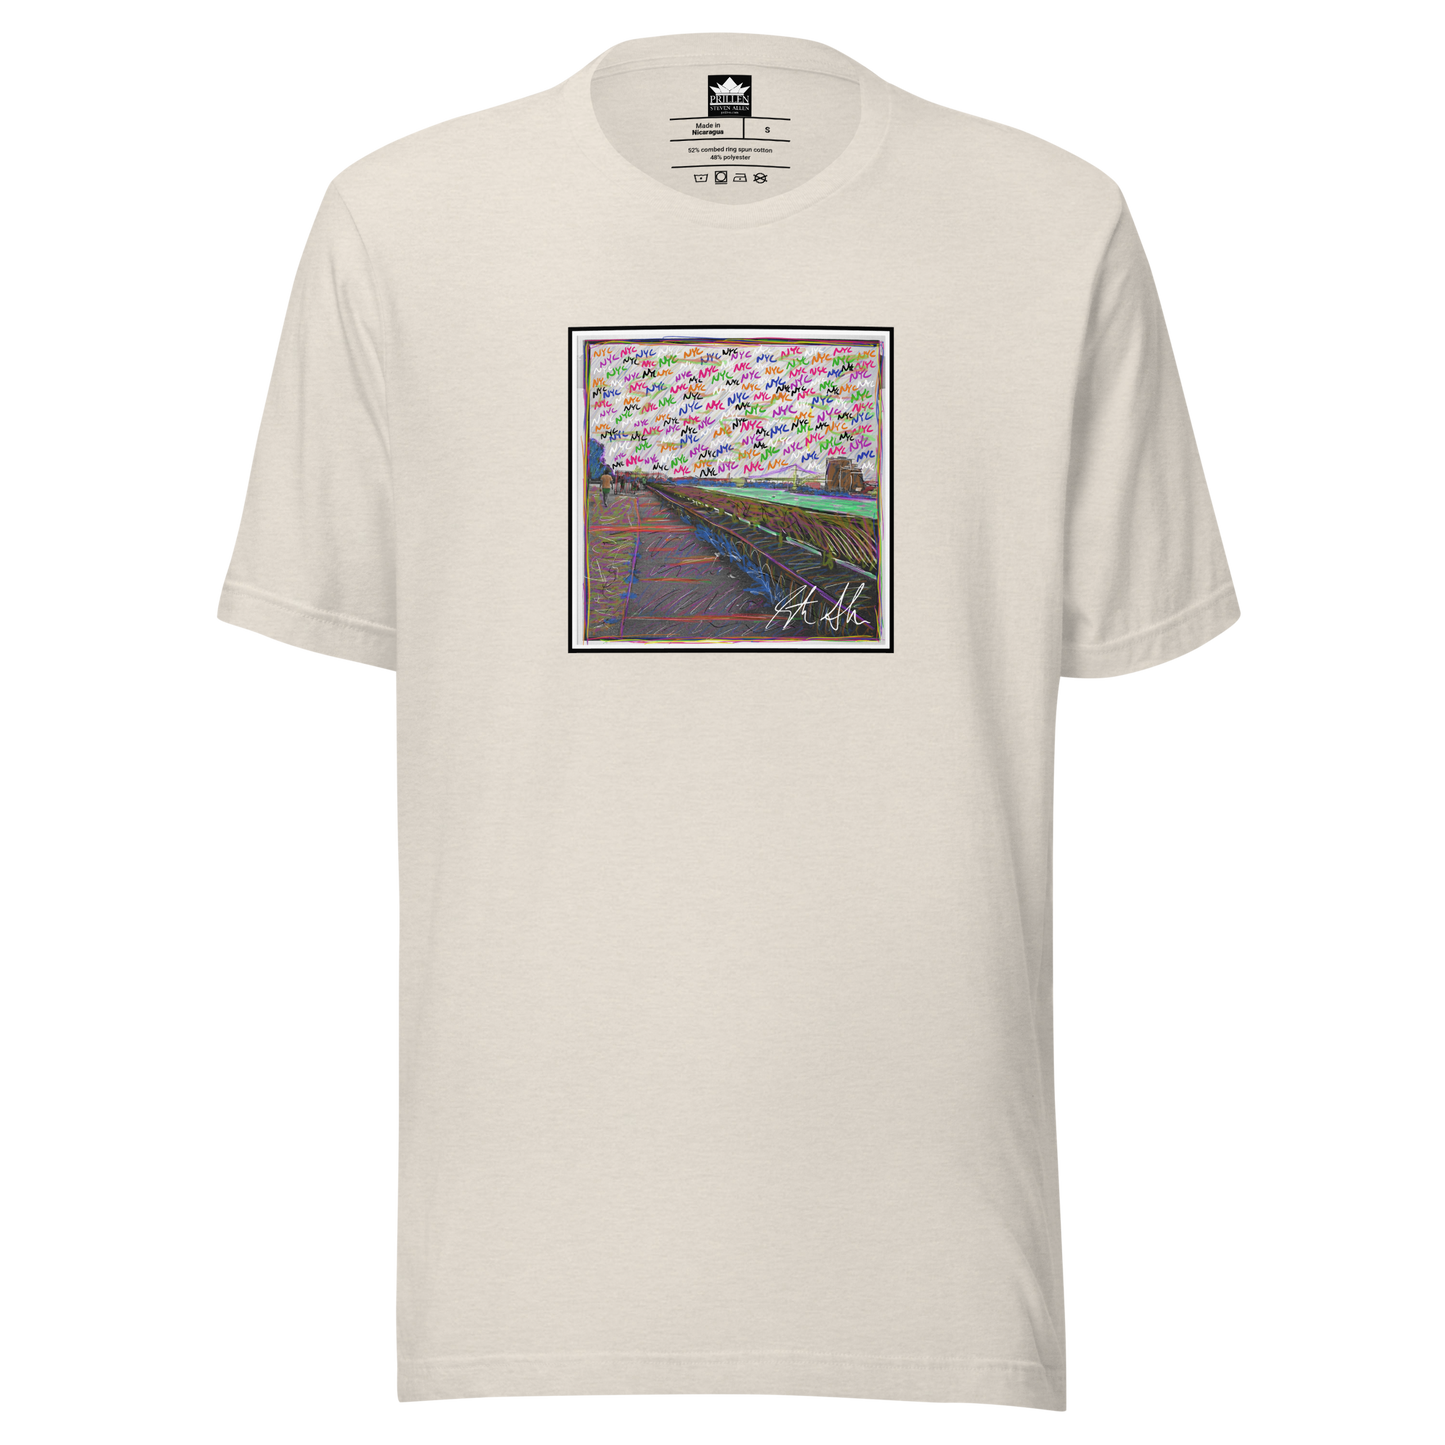 Prillen - Steven Allen - Colorized NYC East River - Photo T-Shirt